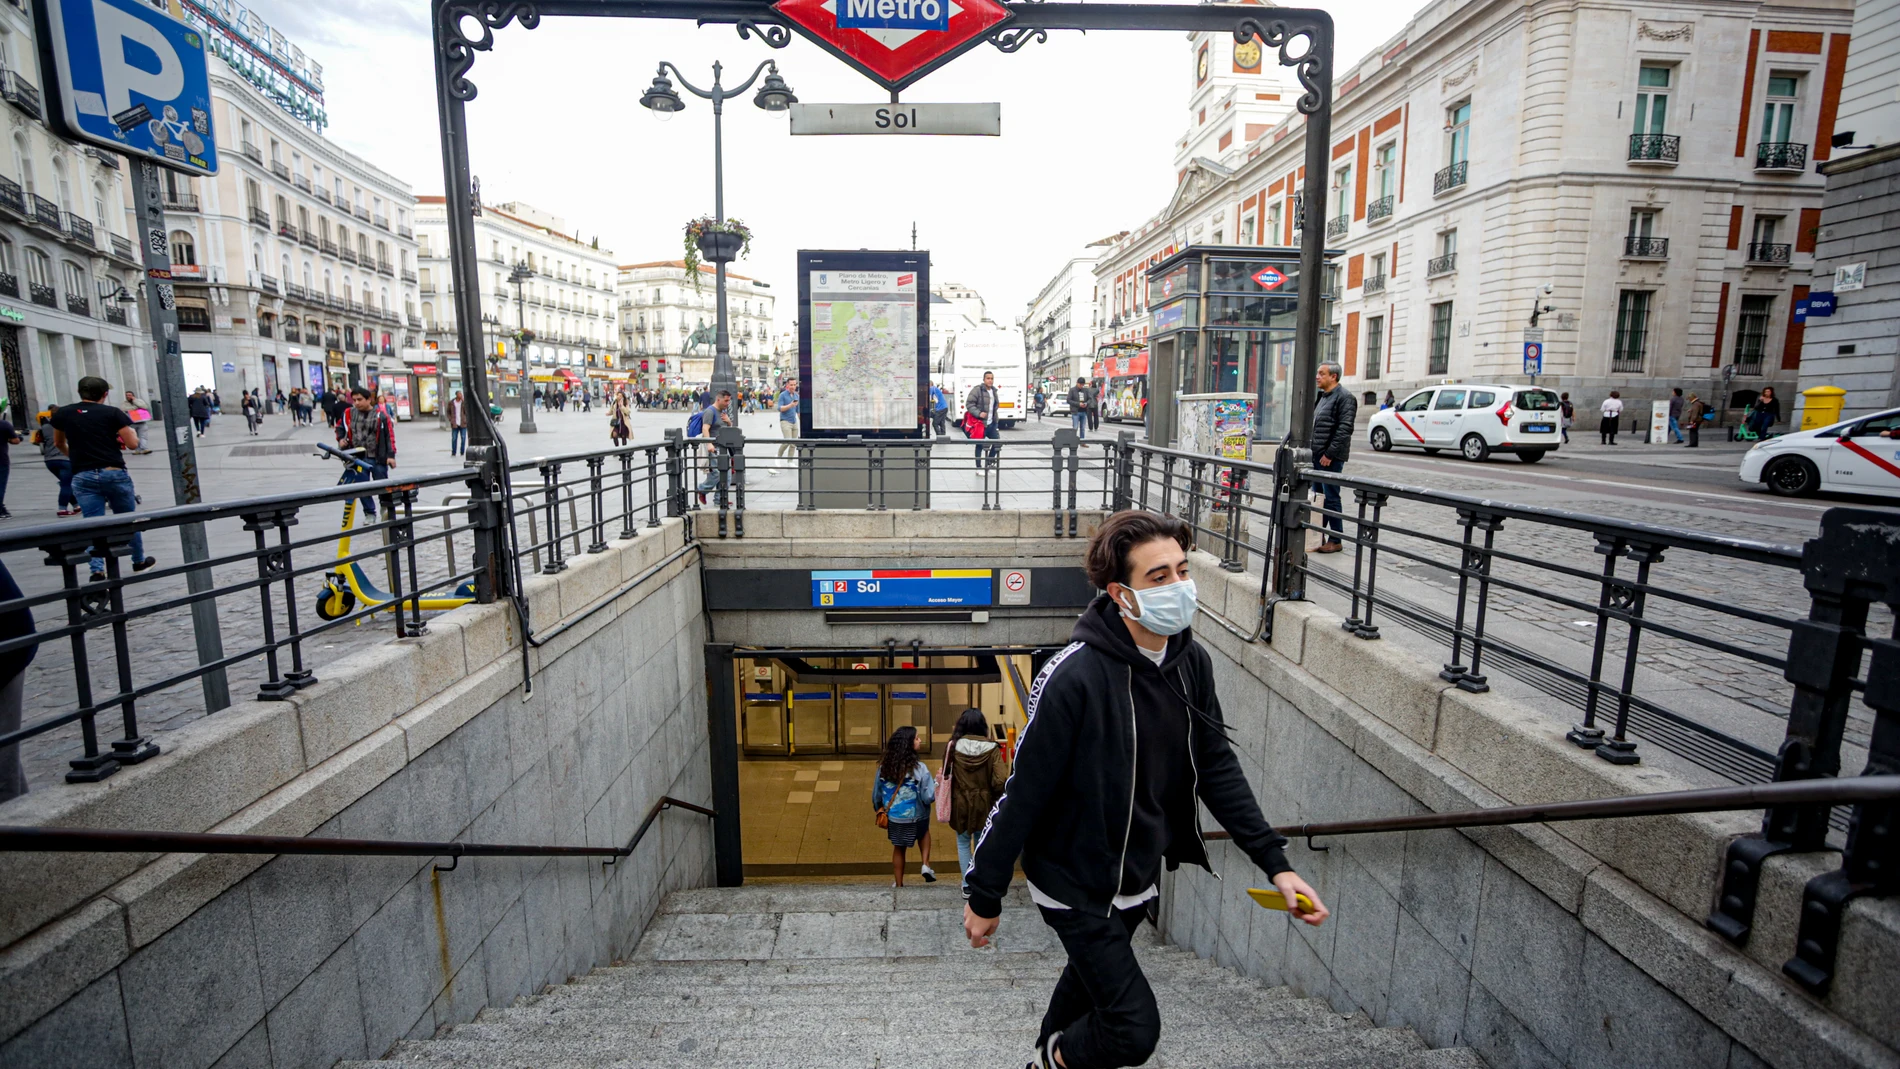 Un joven sale del Metro de la Estación Sol con mascarilla como medida de protección frente al Coronavirus